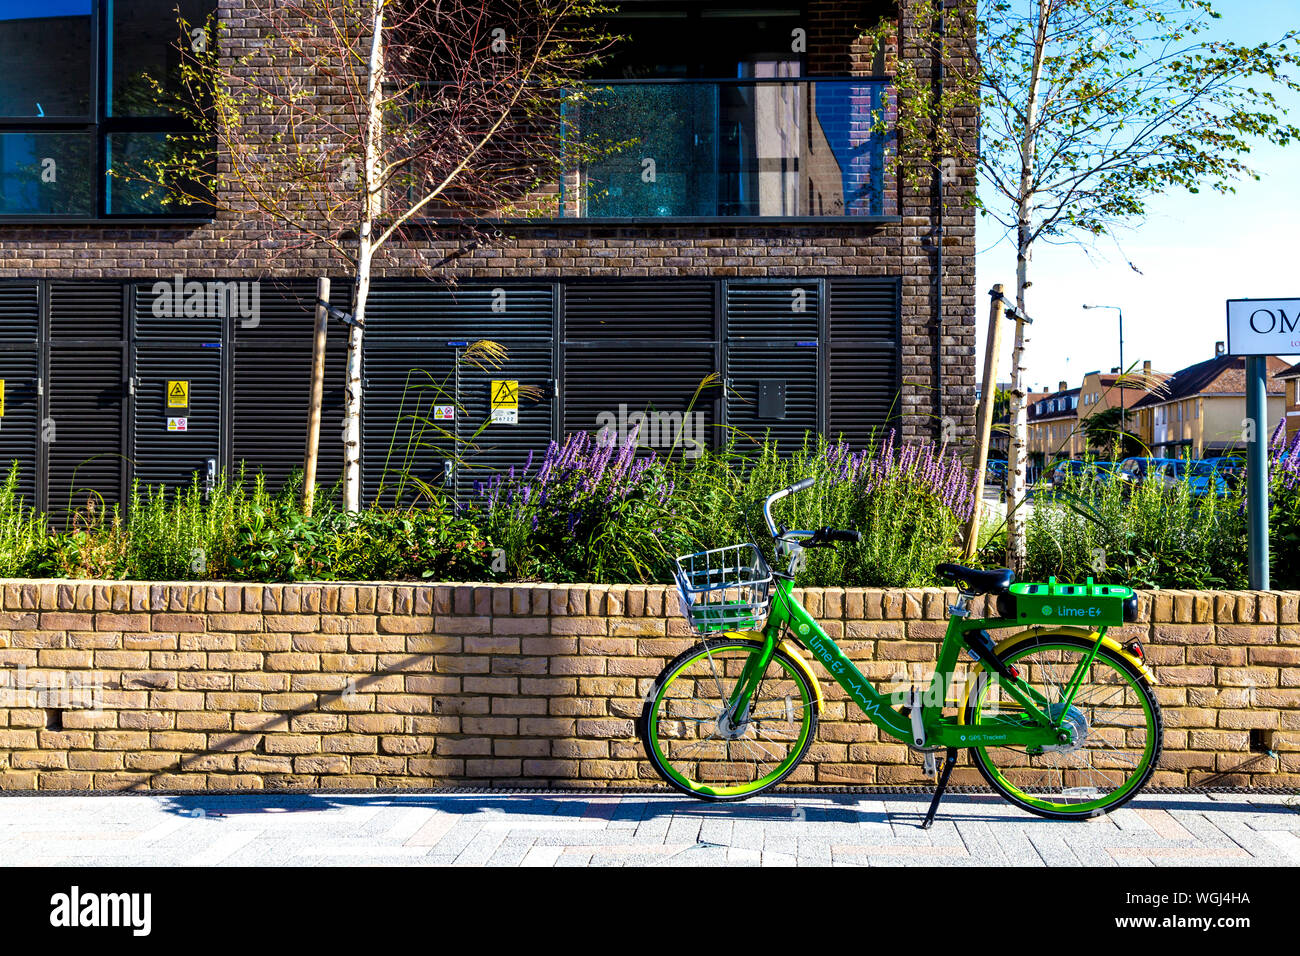 Kalk-E elektrisches Fahrrad auf der Straße geparkt, London, UK Stockfoto